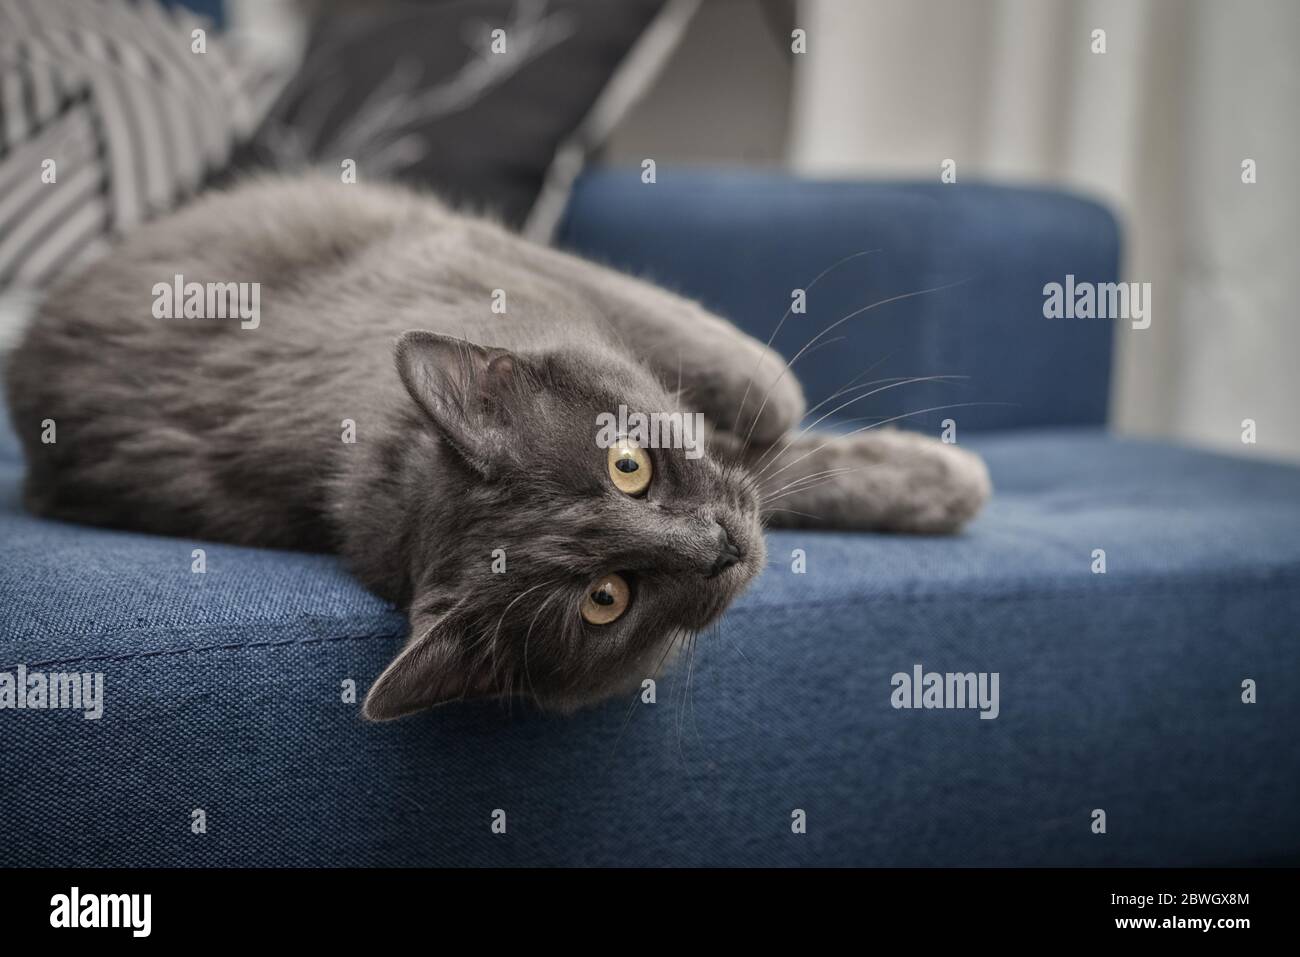 Graue Katze Nebelkatze liegt zu Hause auf dem Sofa. Nebelung-eine seltene Rasse, ähnlich wie das russische Blau, mit bis auf mittlere Länge seidigen Haaren. Stockfoto